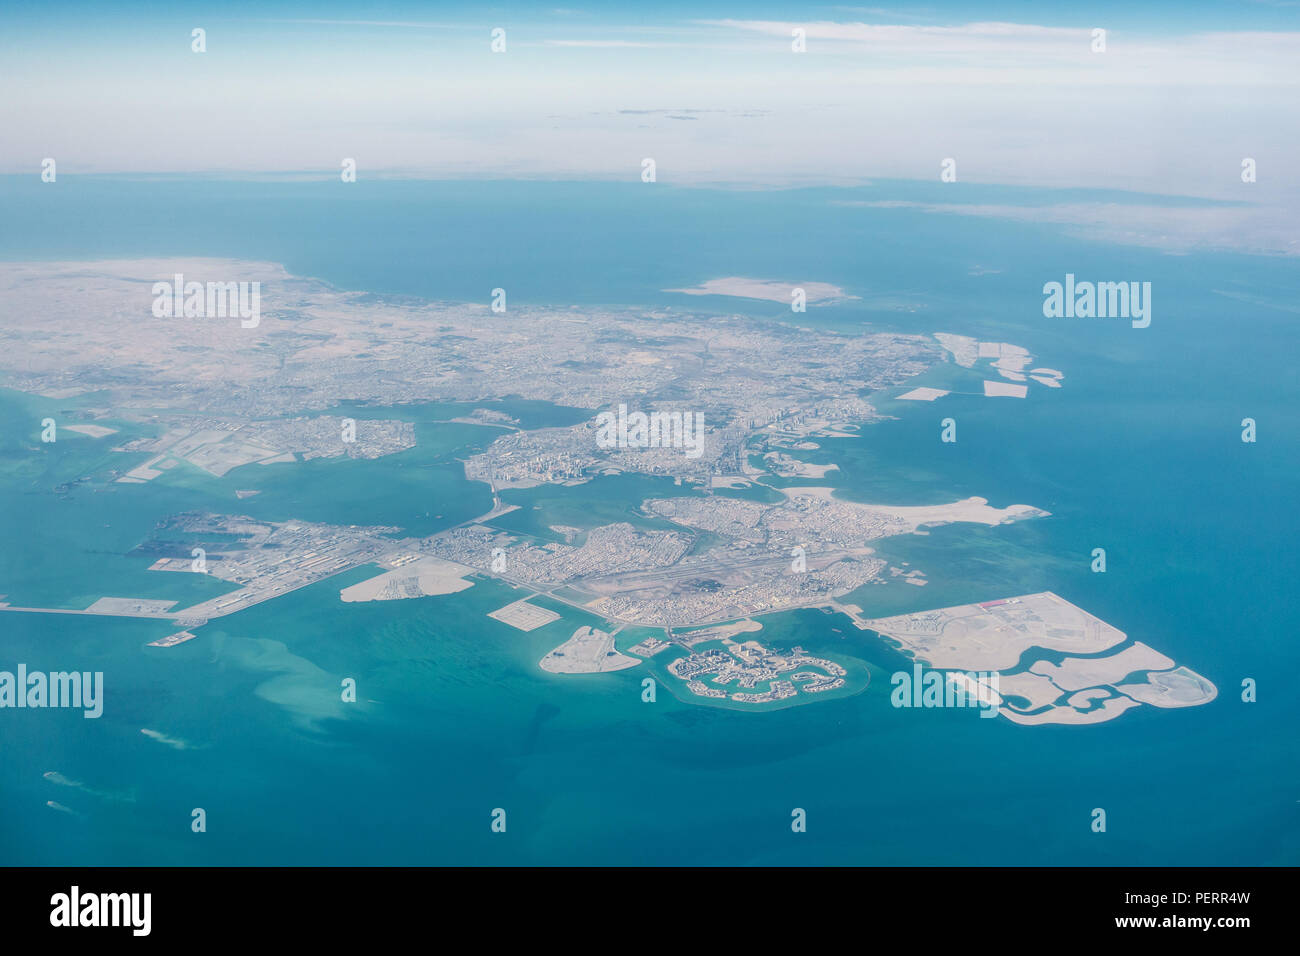 La haute altitude vue aérienne de la partie nord de Bahreïn Banque D'Images